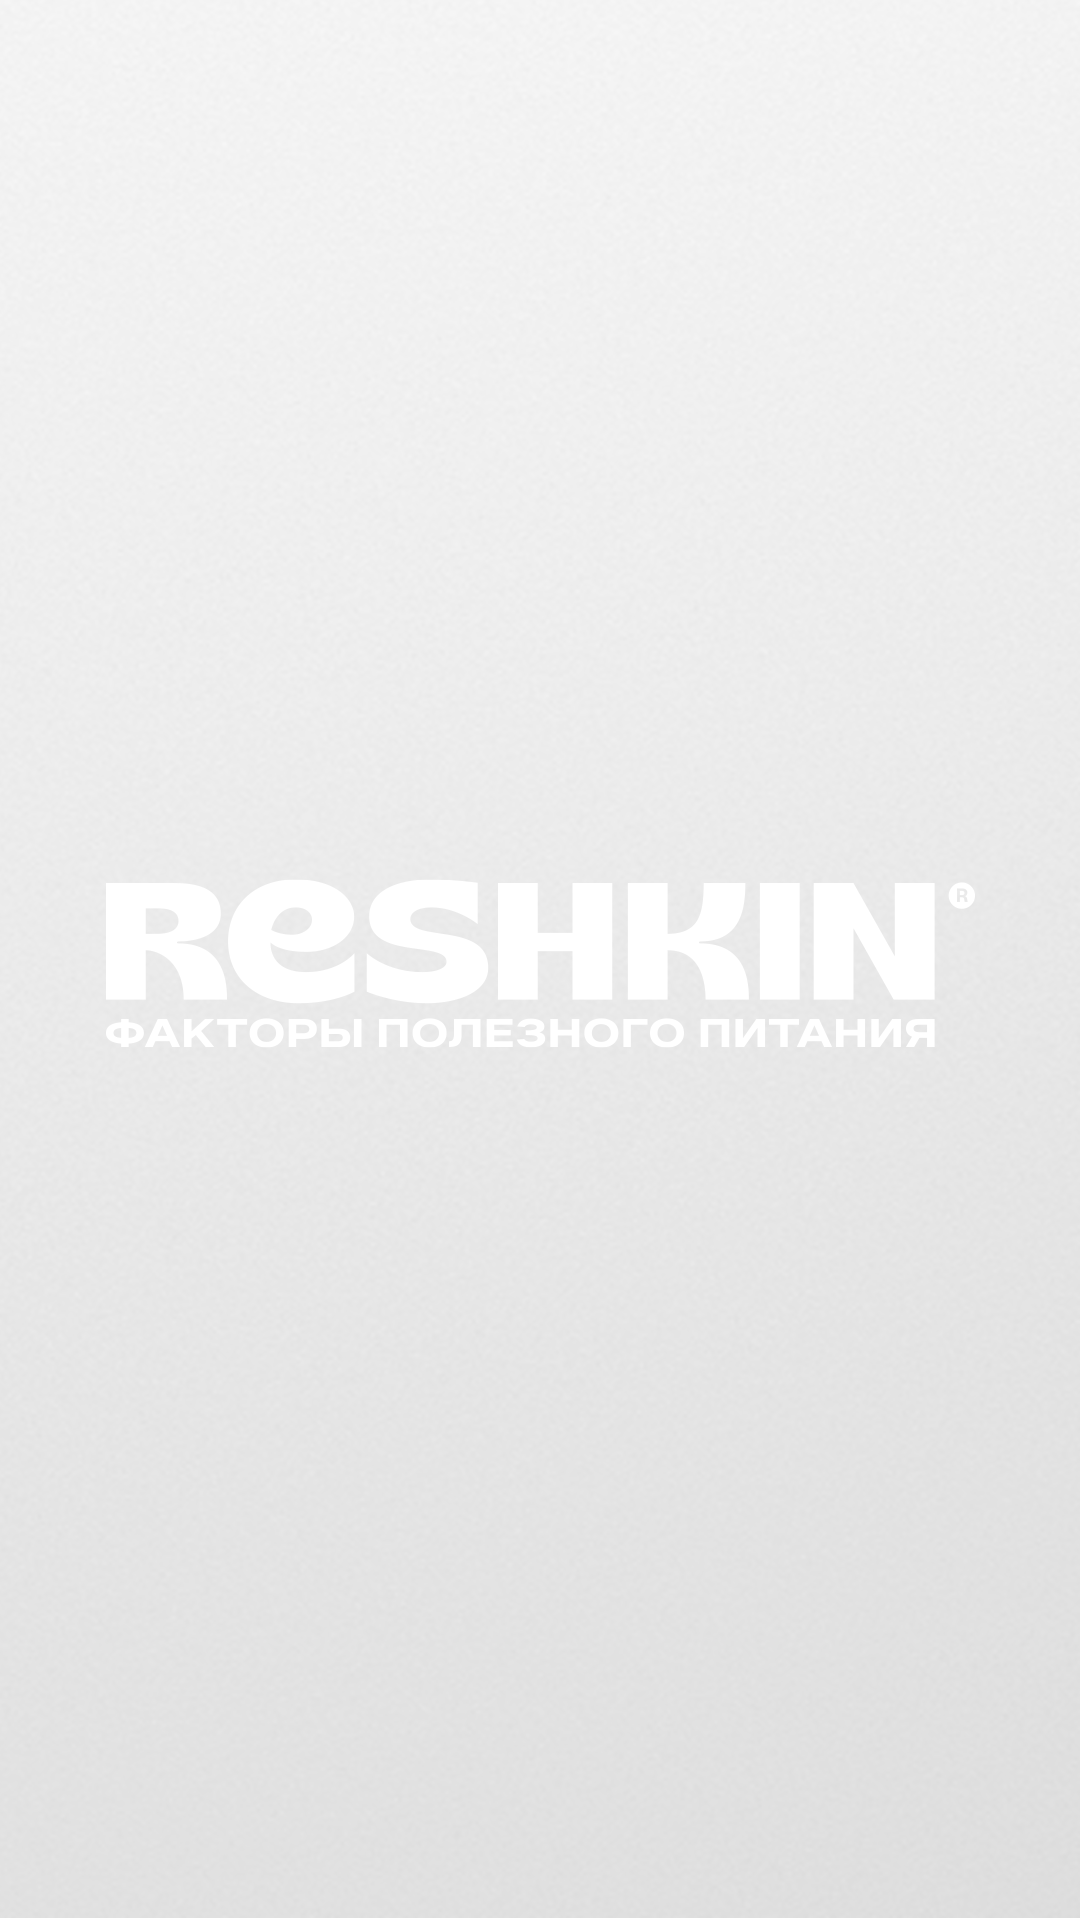 Reshkin-hl